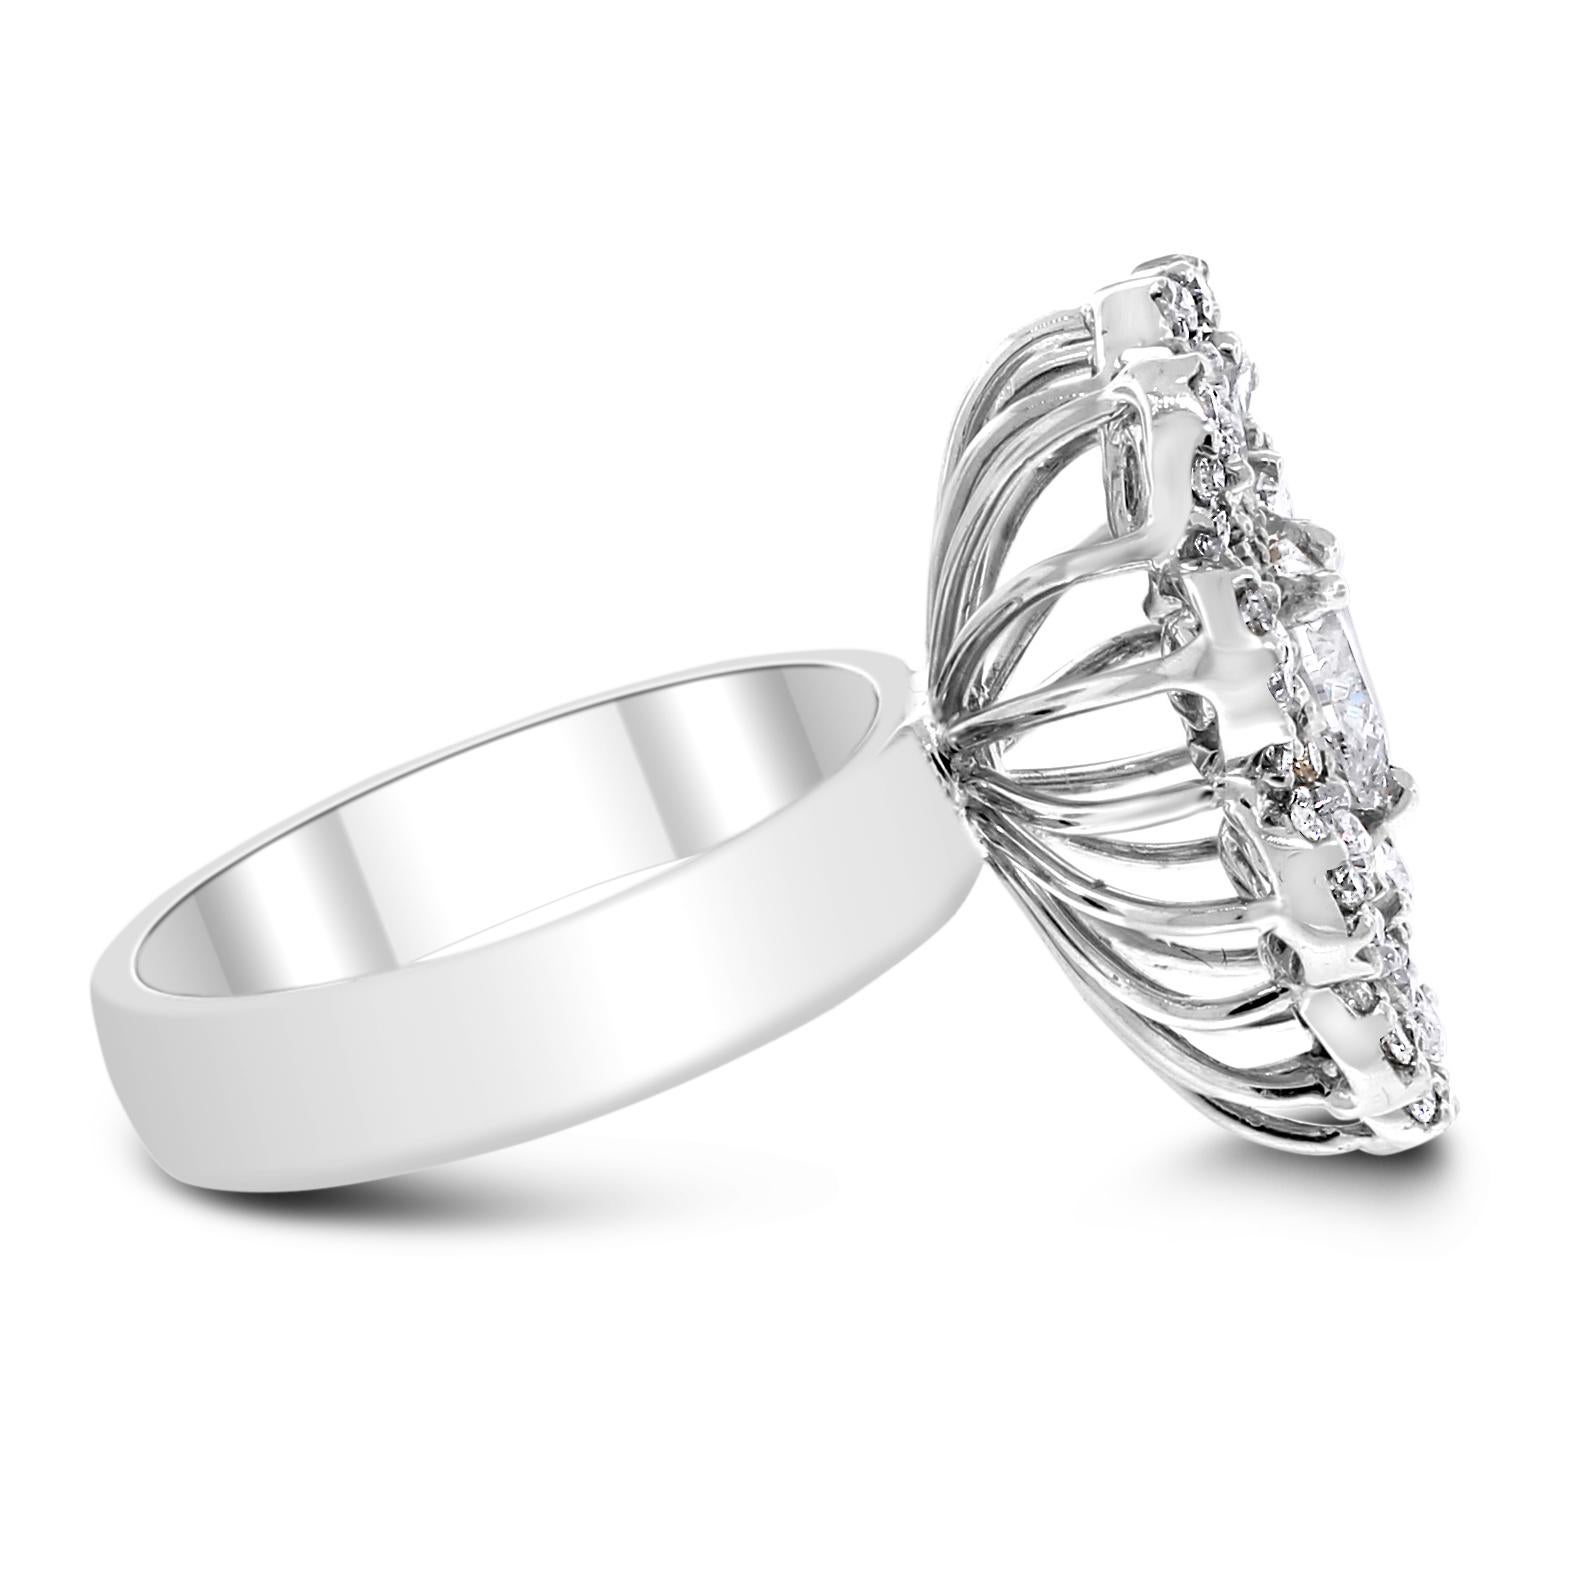 La bague Amore Heart Diamond Ring célèbre l'amour et la joie grâce à son design joyeux et à la combinaison de formes et de couleurs.

Diamants en forme de : Coeur, Poire et Rond
Poids total des diamants : 1,79 ct
Solitaires centraux : 0.67